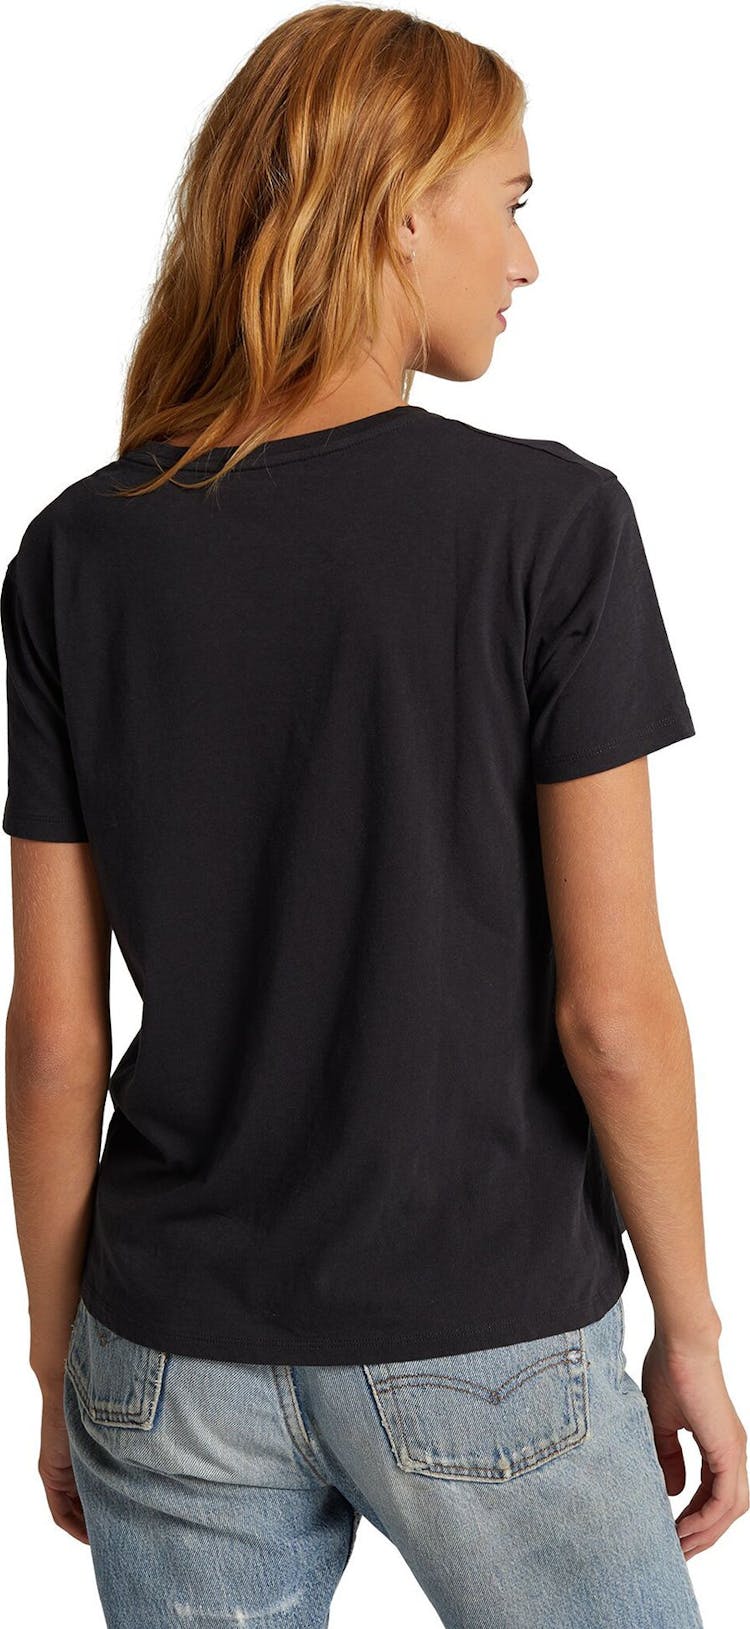 Numéro de l'image de la galerie de produits 2 pour le produit T-shirt manches courtes Classic - Femme